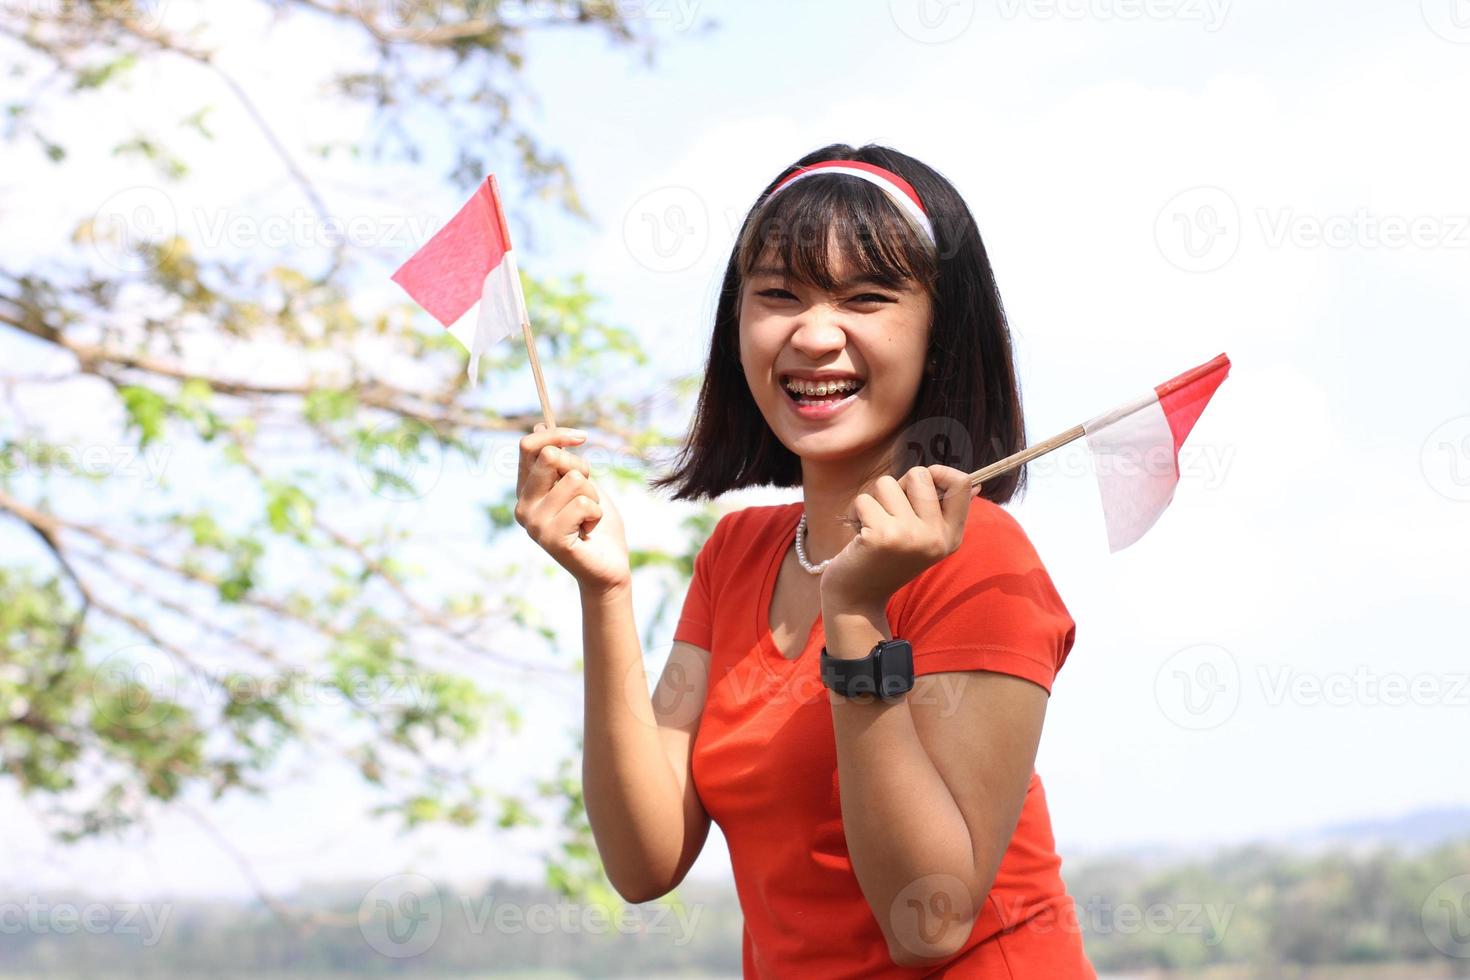 belle jeune femme asiatique portant le drapeau indonésien avec un visage joyeux photo